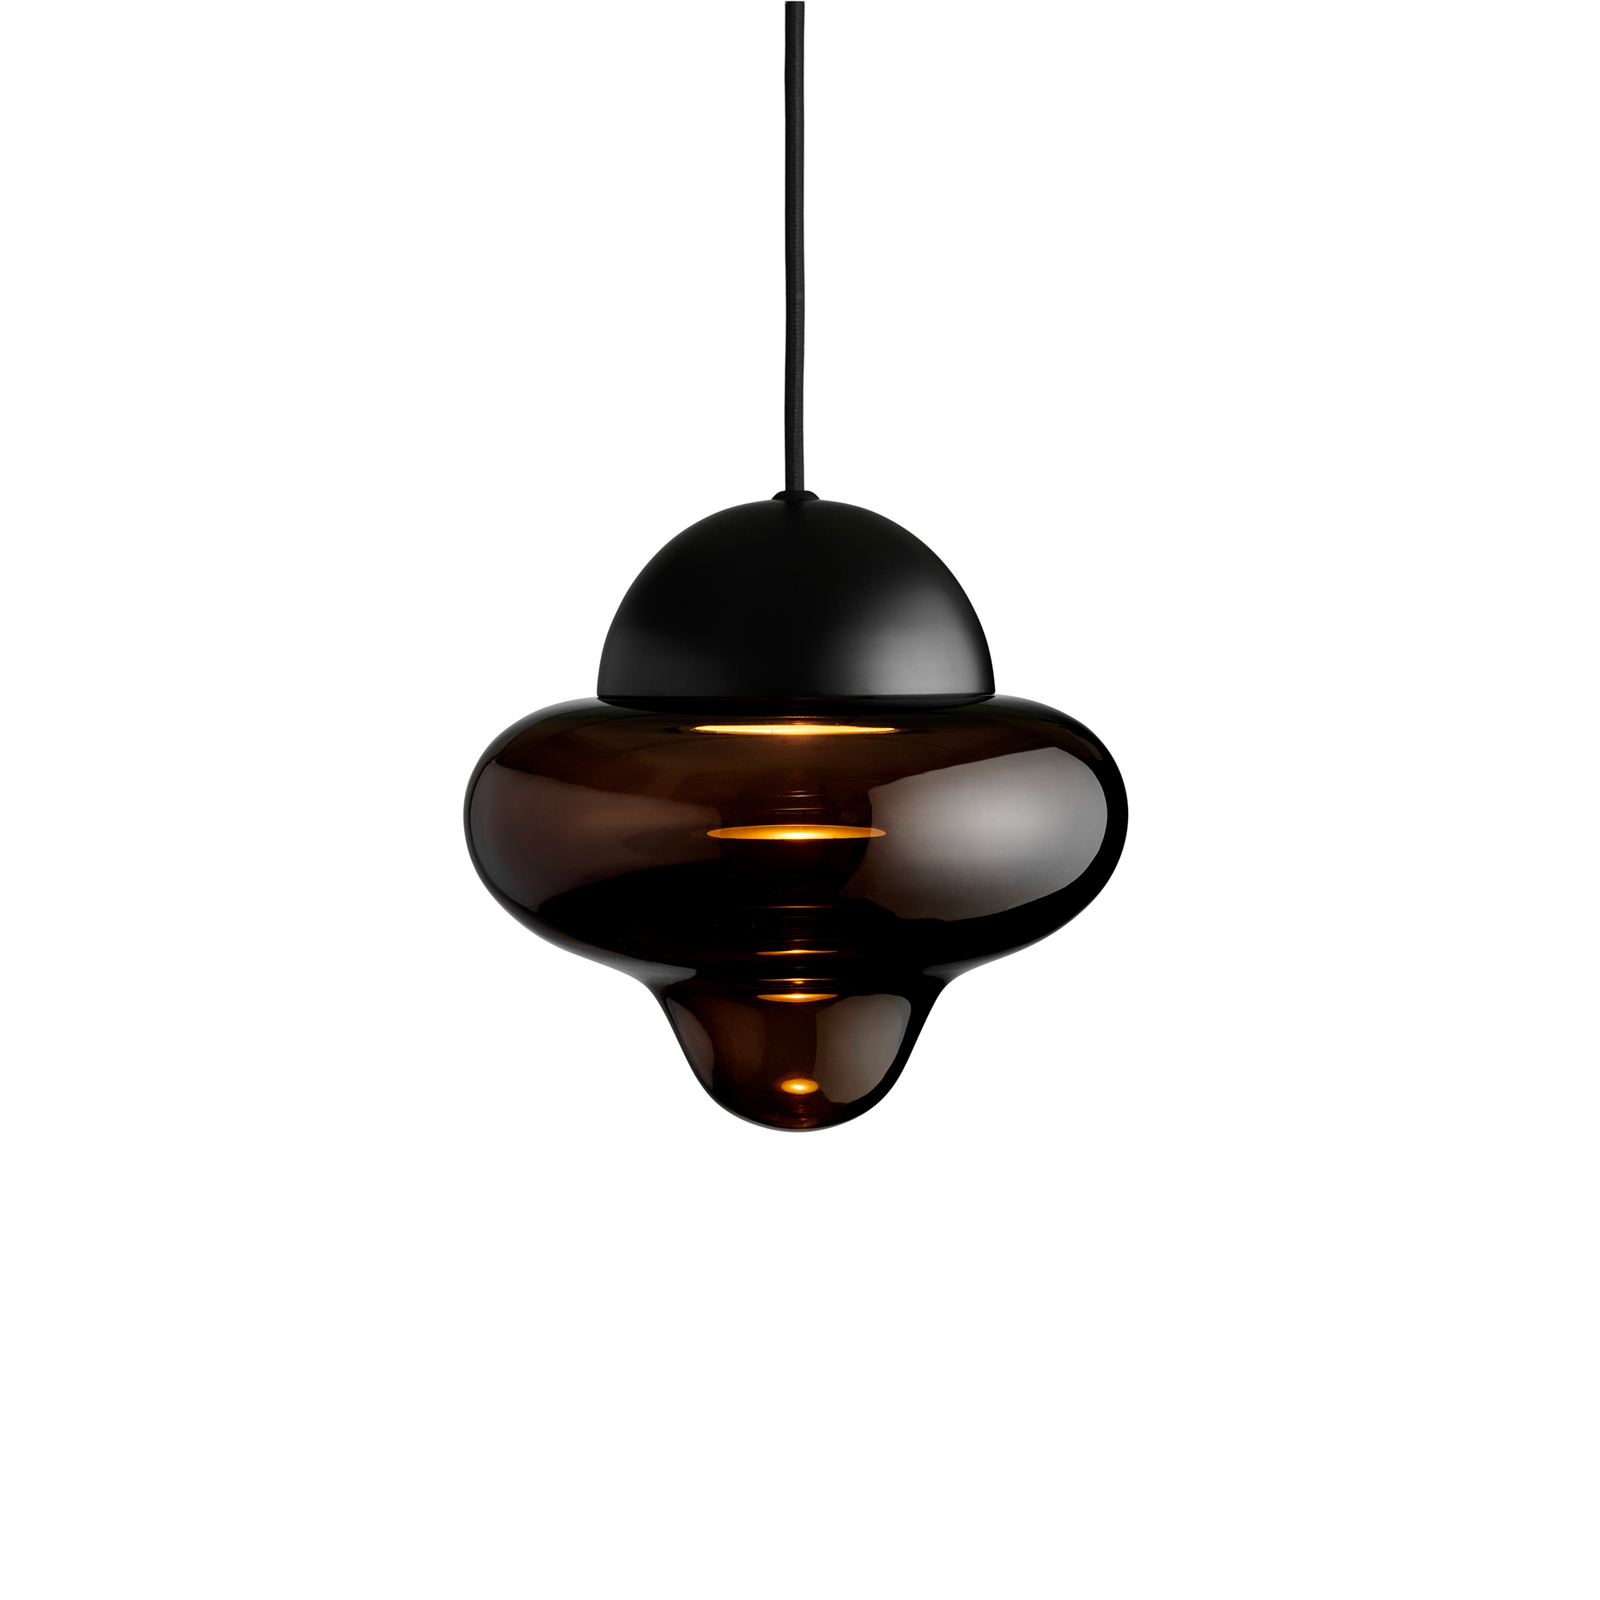 LED-Hängeleuchte Nutty, braun / schwarz, Ø 18,5 cm, Glas